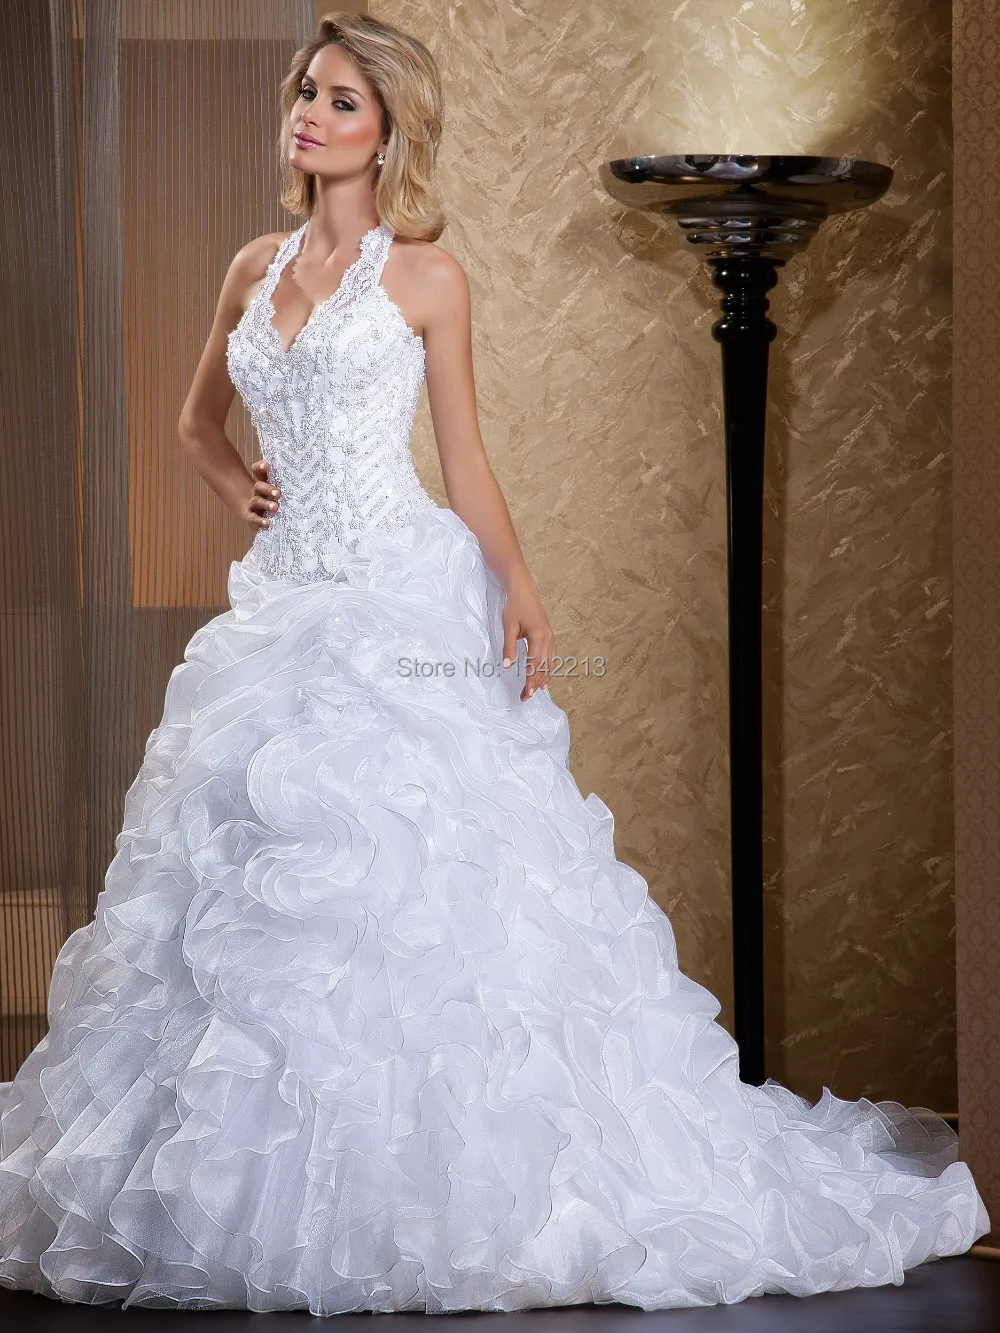 Online Get Cheap Sell Wedding Dress Online -Aliexpress.com ...